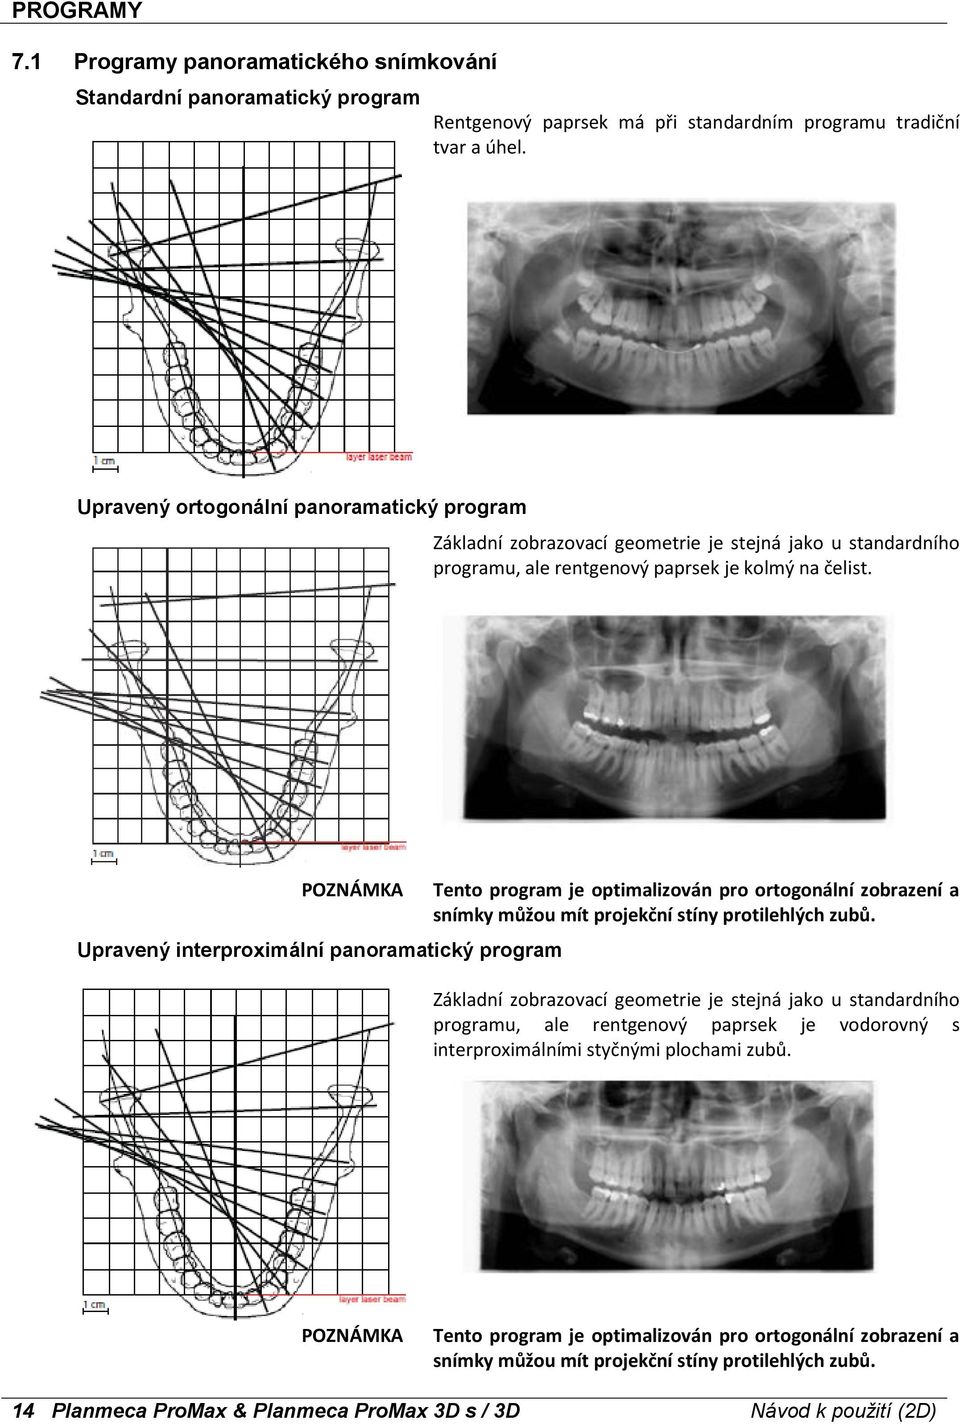 Upravený interproximální panoramatický program Tento program je optimalizován pro ortogonální zobrazení a snímky můžou mít projekční stíny protilehlých zubů.